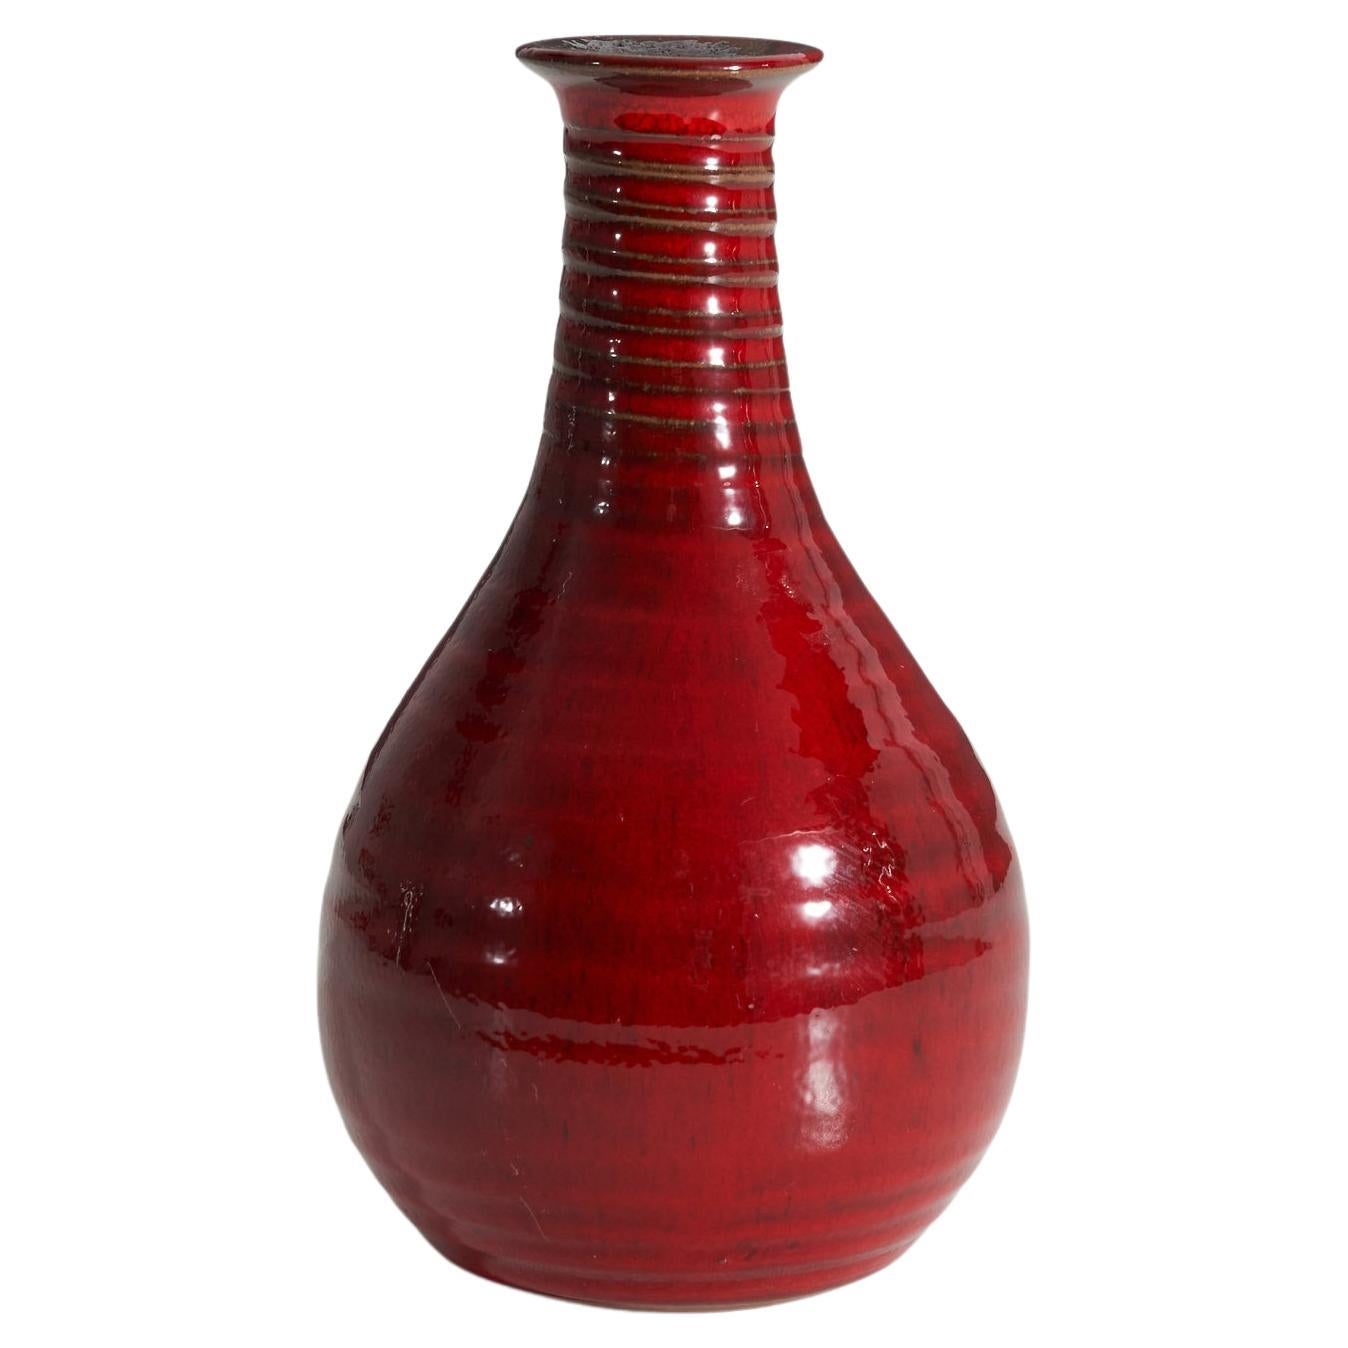 Designer suédois, Vase, grès verni rouge, Suède, vers les années 1960